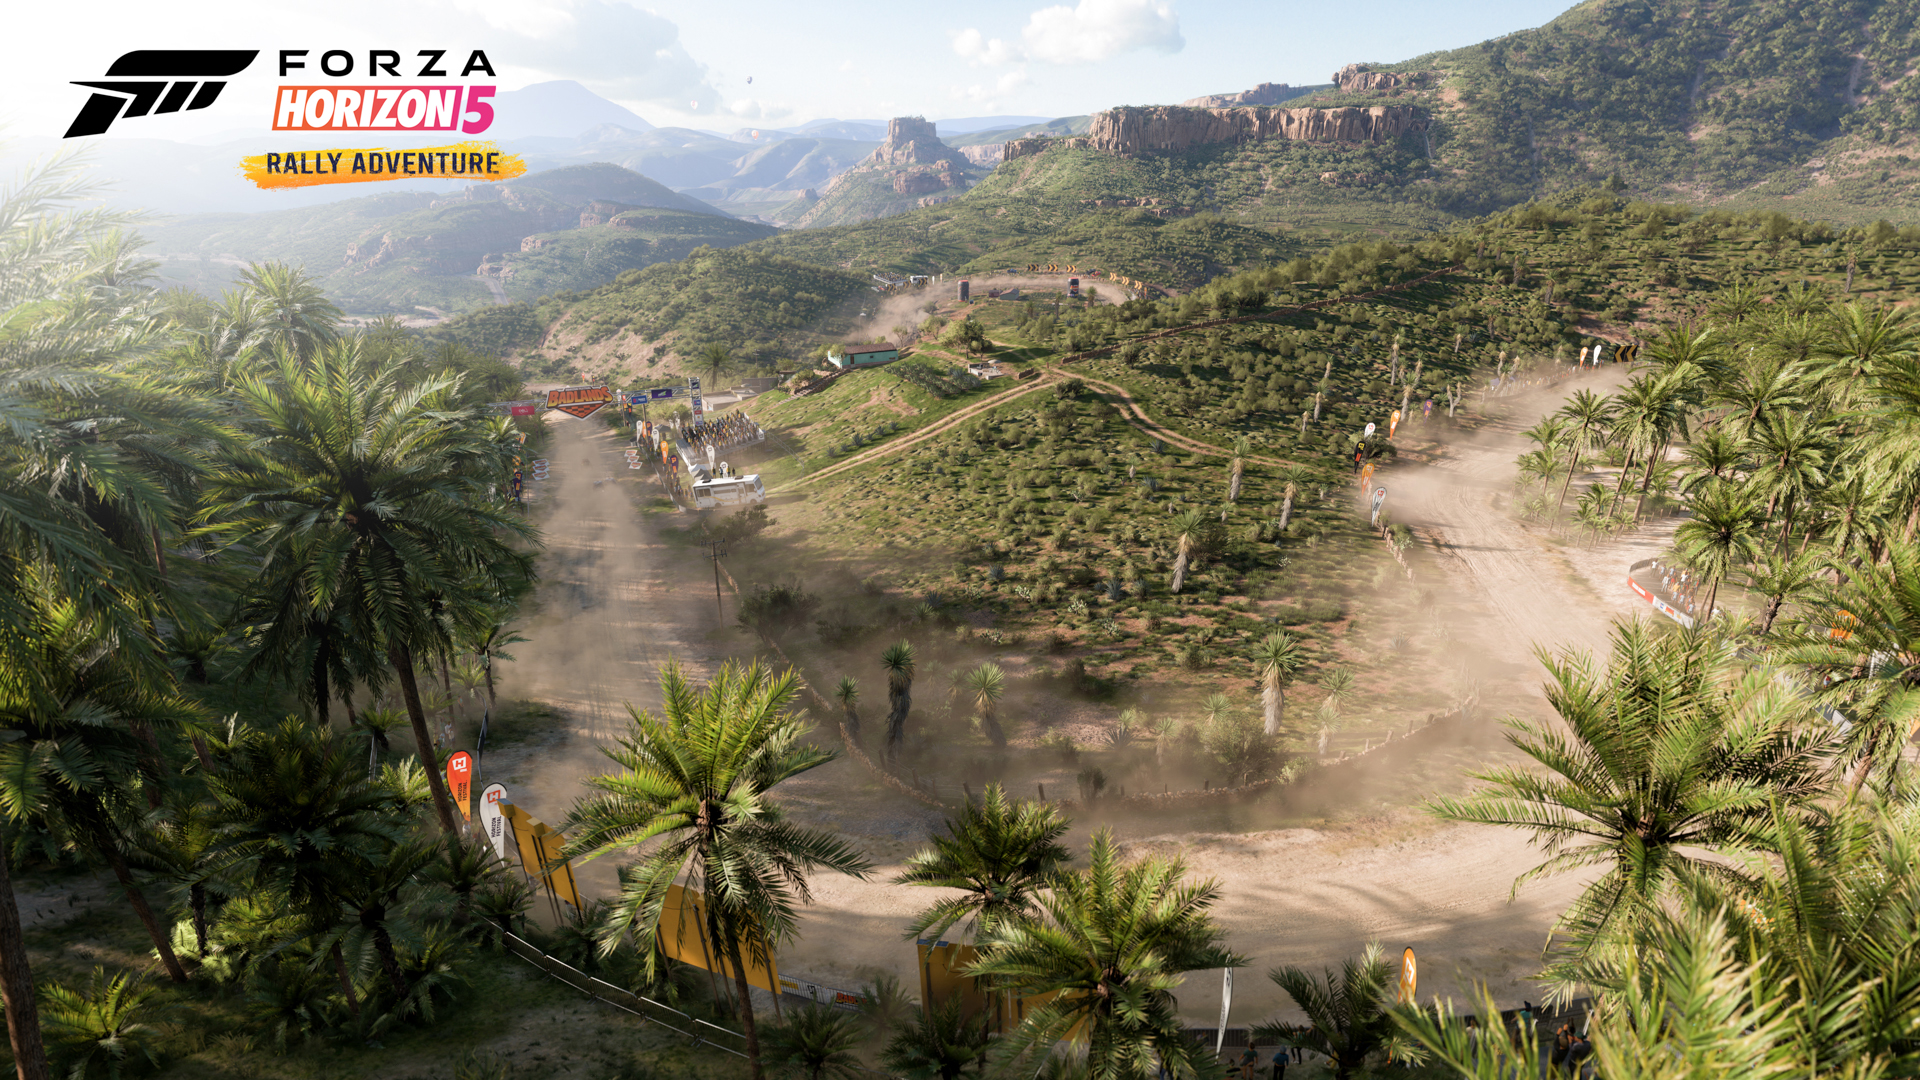 Forza Horizon DLC on Sale: Season Pass - $6.73, Rally Expansion